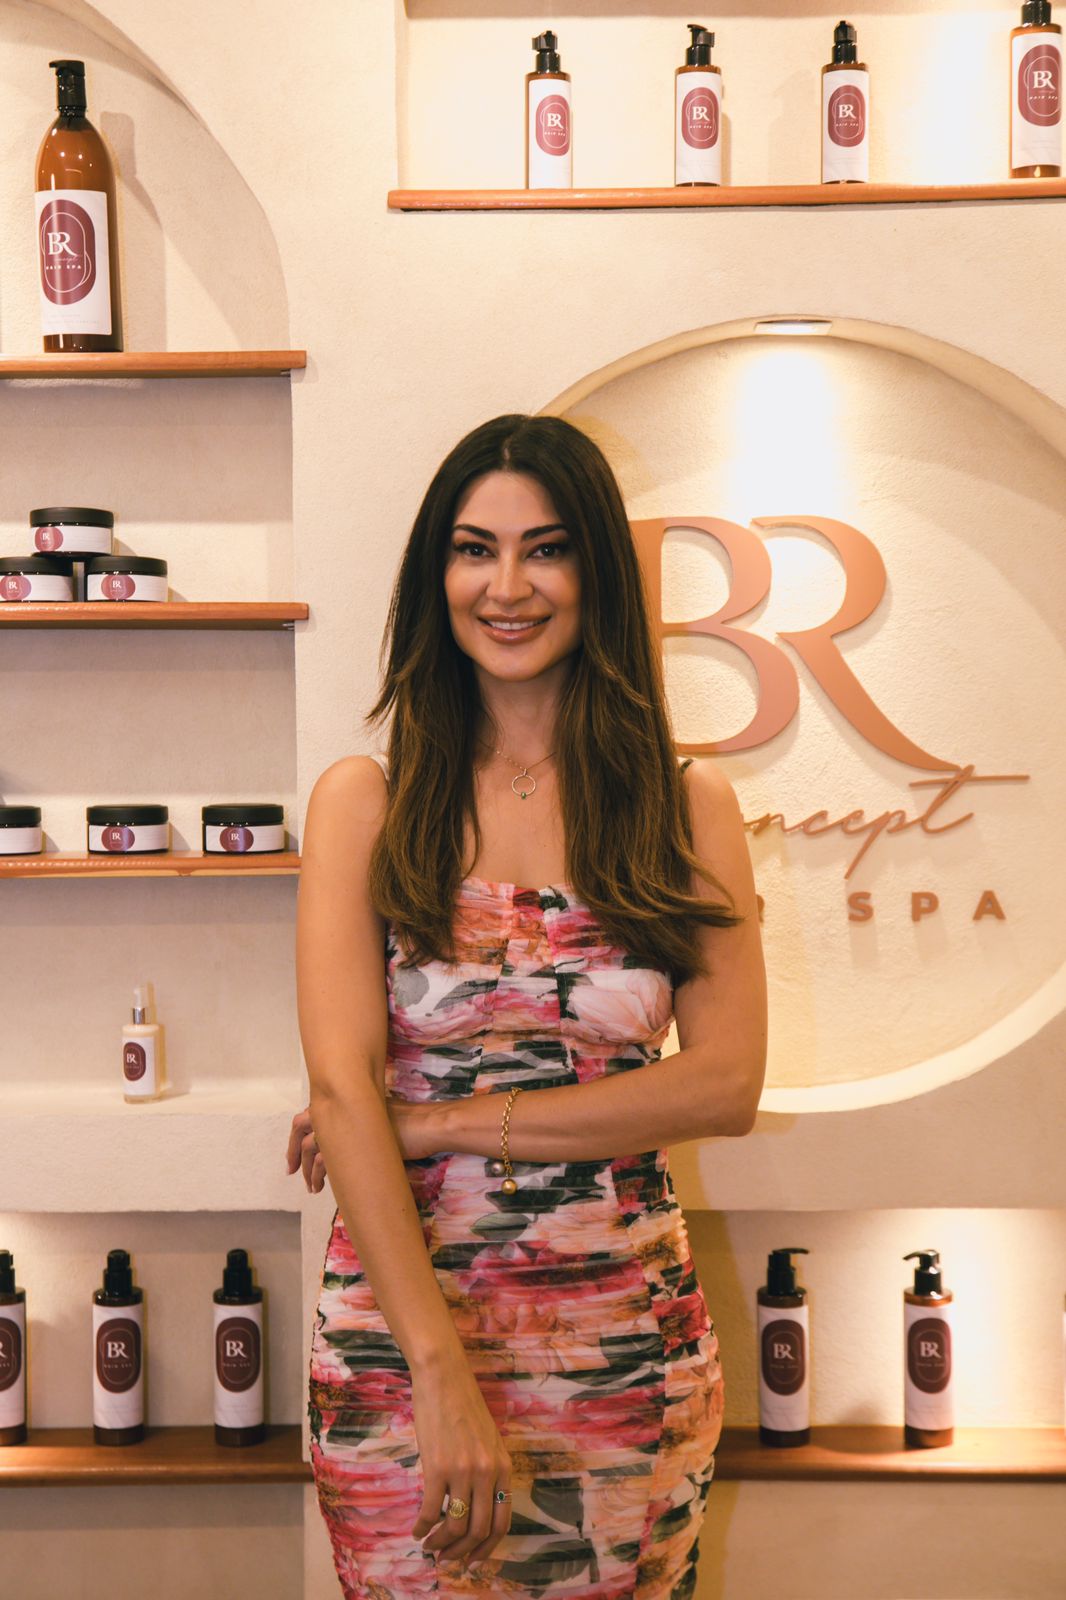 A Dra. Bruna Rezende, especialista em cabelos, indicou alguns cuidados e os produtos essenciais para tratar os cabelos e evitar frizz